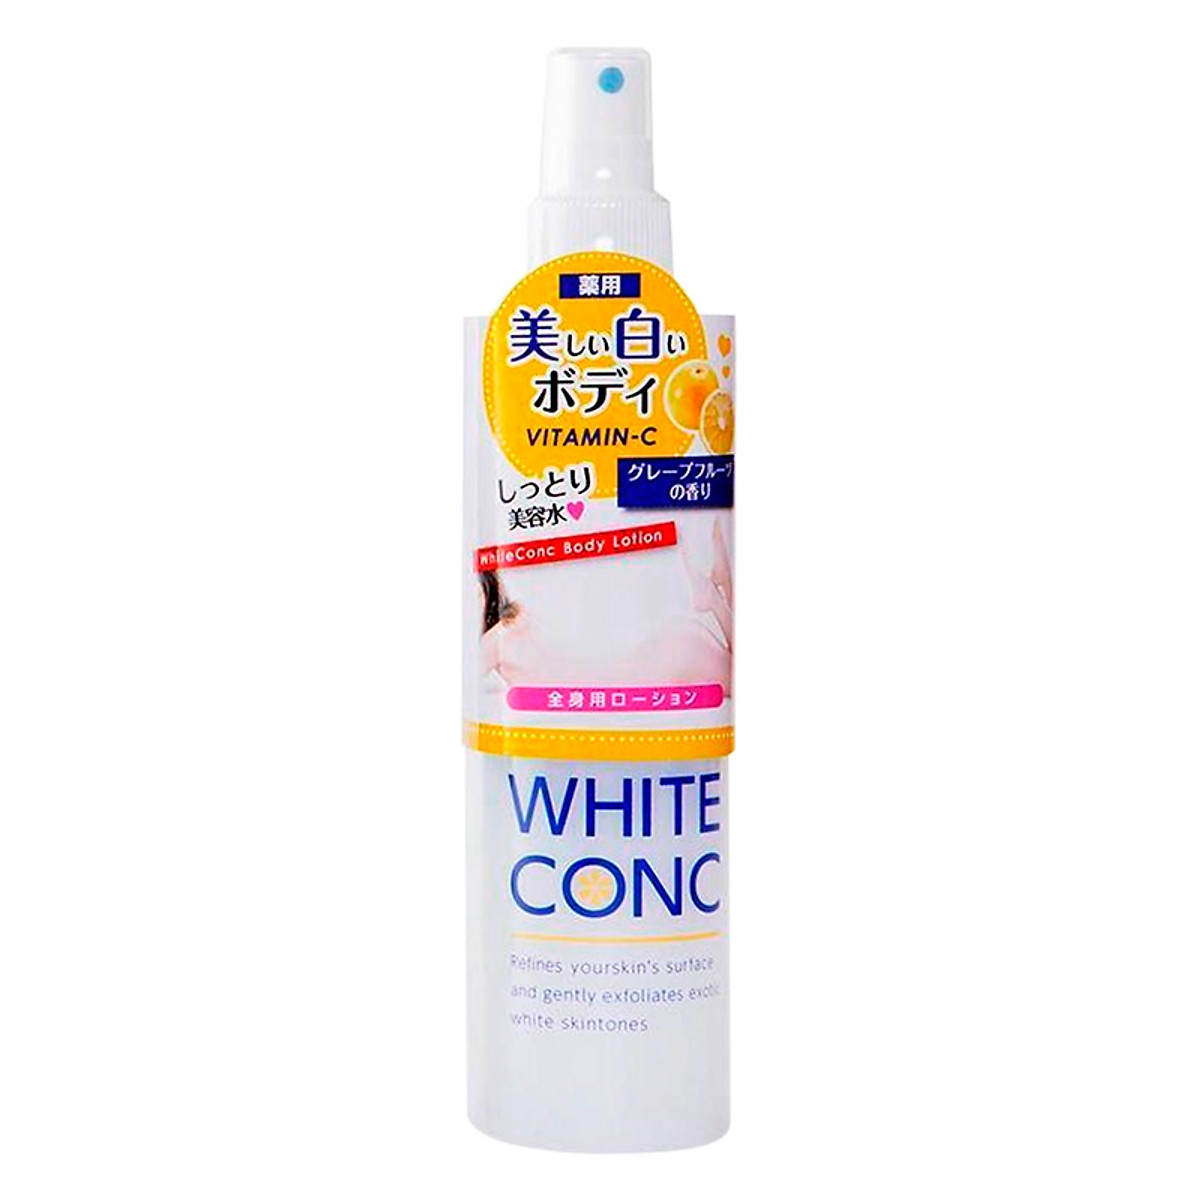 Xịt dưỡng trắng da White Conc Body Lotion